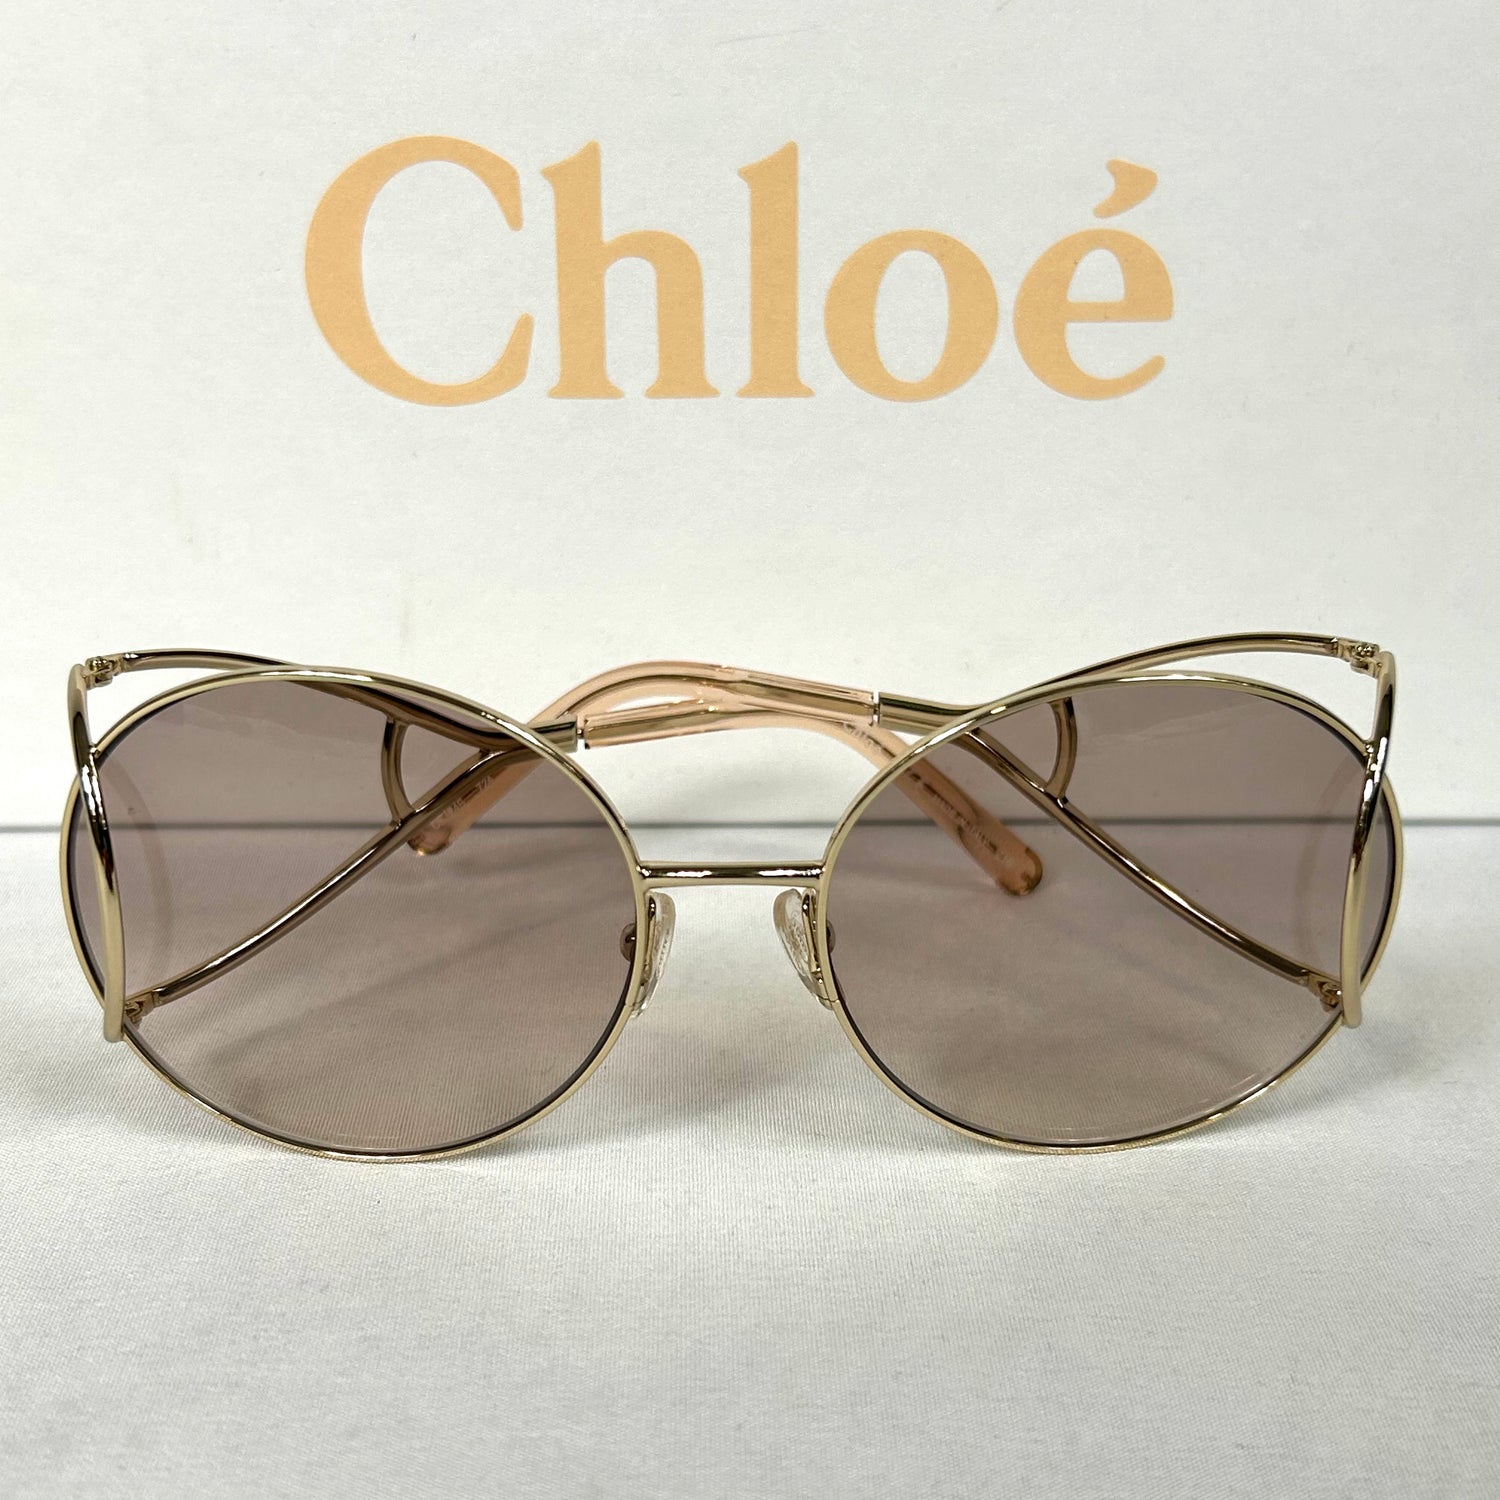 Chloé – Sonnenbrillen